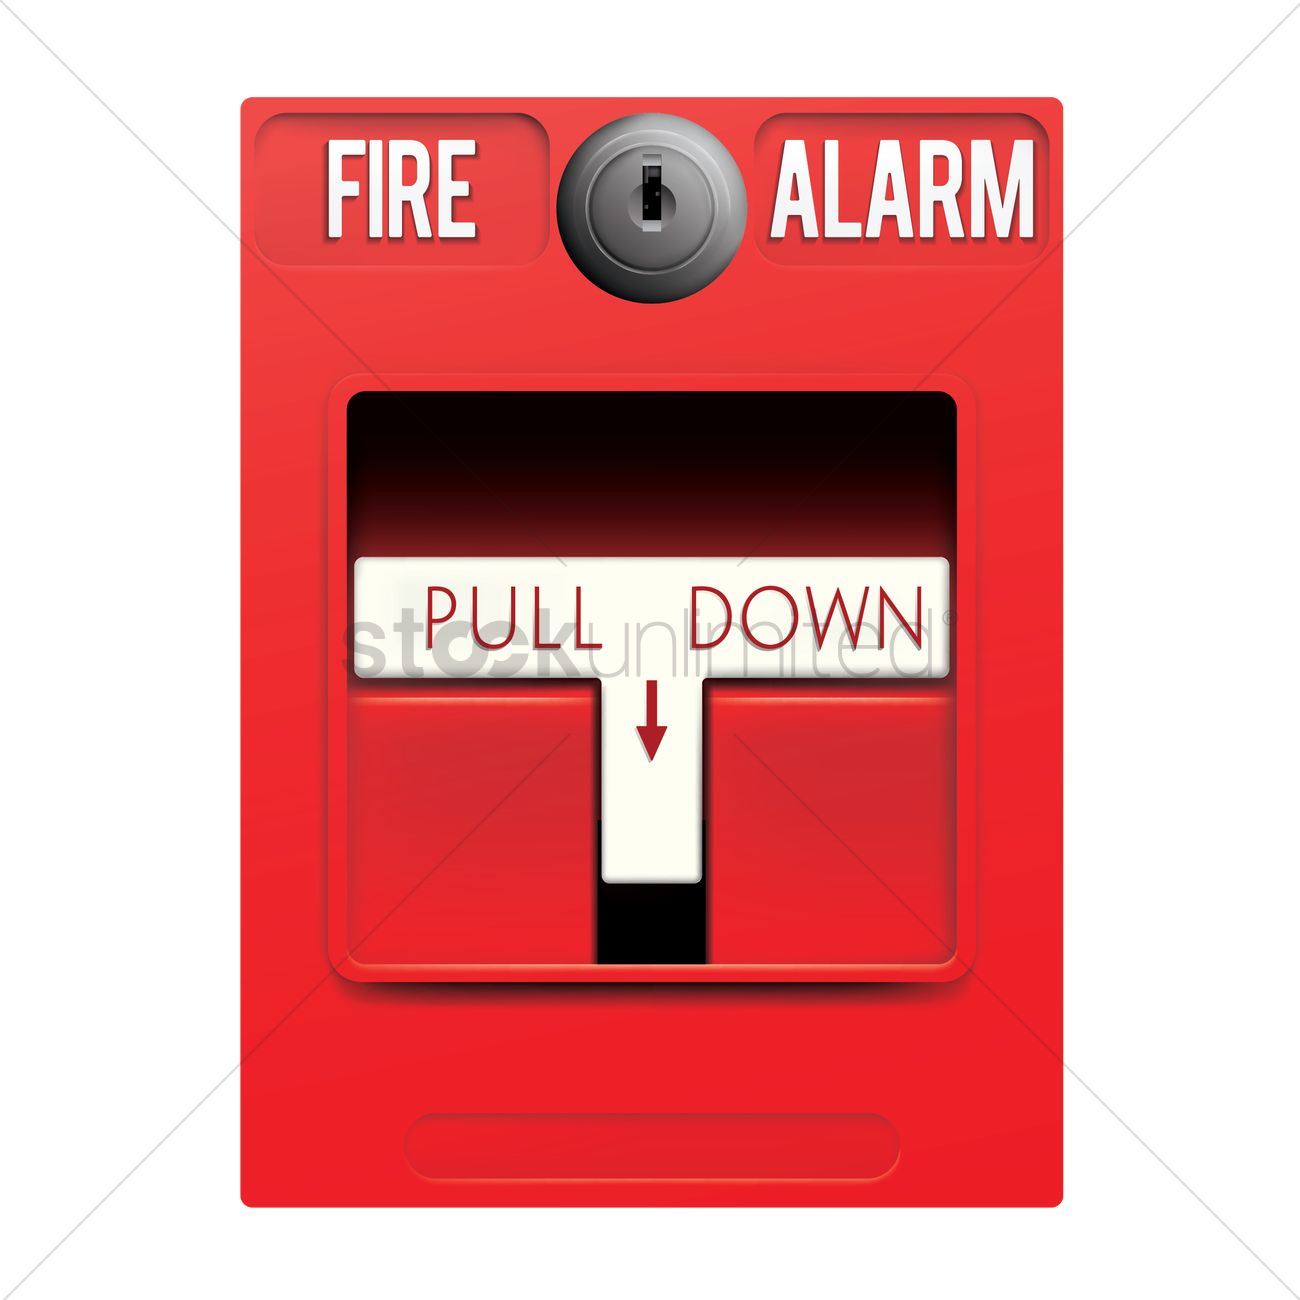 Fire alarm. vectors, stock clipart